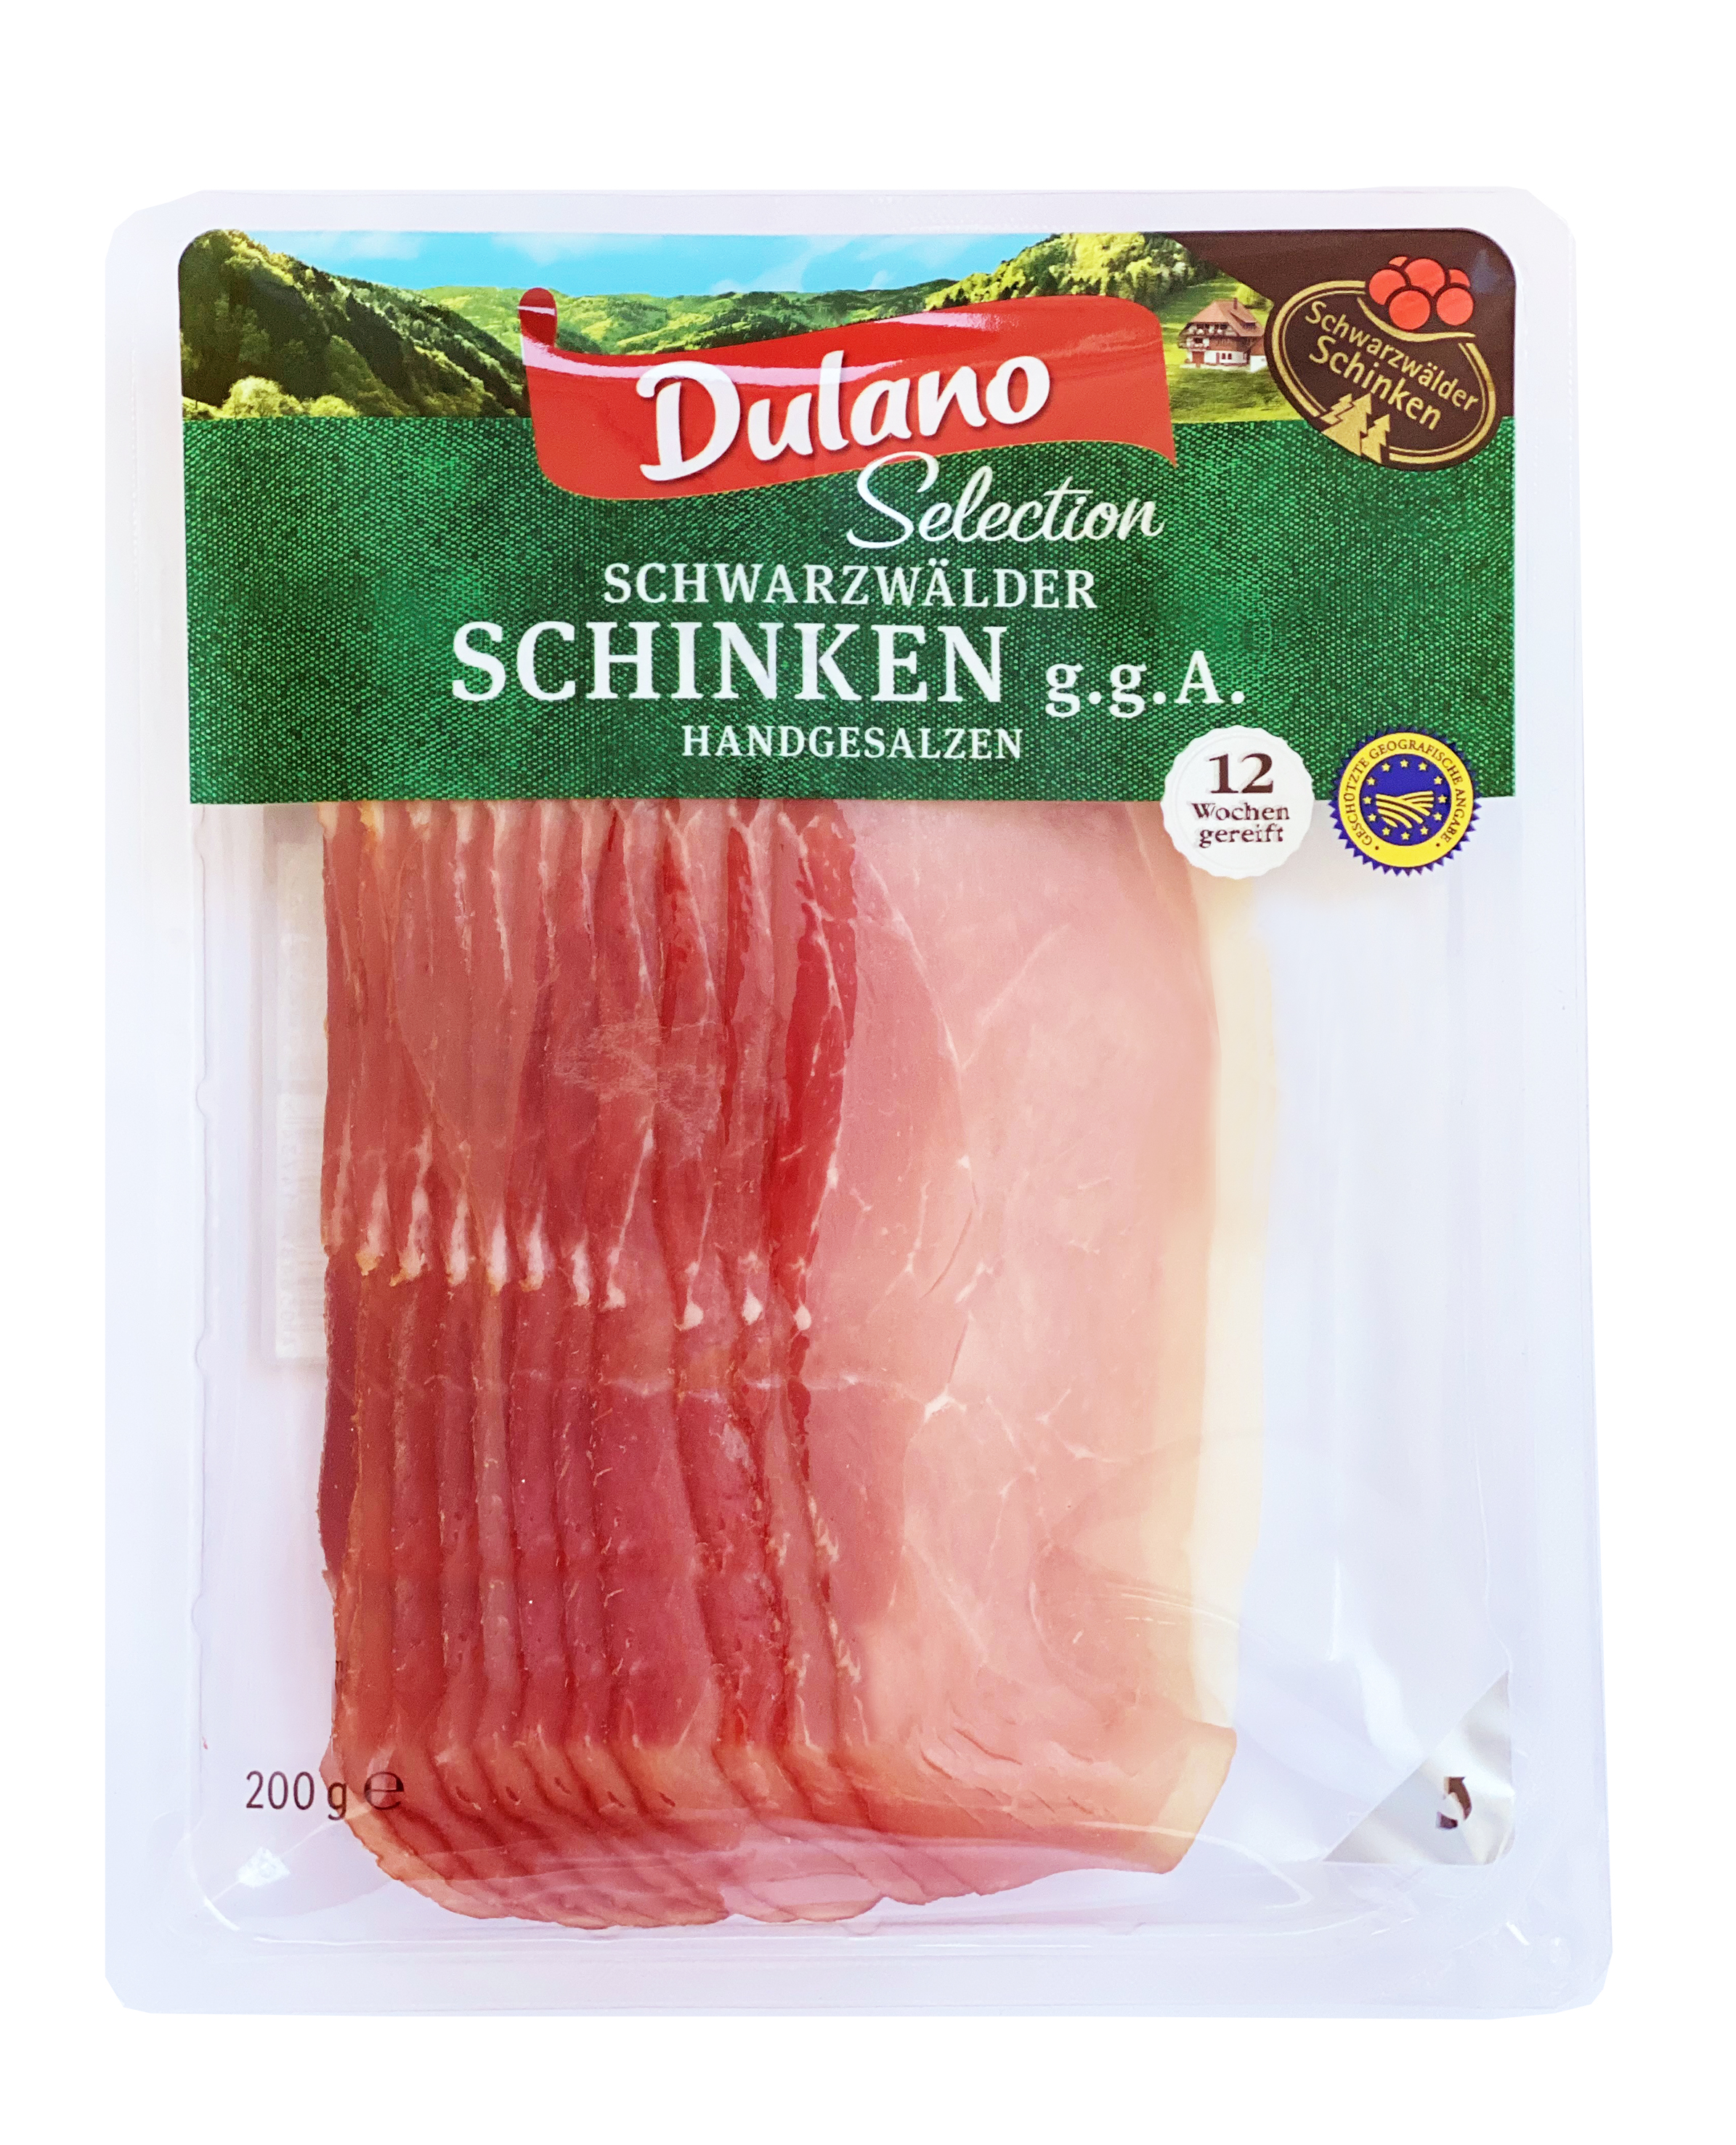 Schwarzwälder Schinken g.g.A. (200 grams) - - Pork Sausages -  Prepared/Processed Food / Beverage / Tobacco Meat/Poultry/Sausages  Meat/Poultry Sausages - Prepared/Processed · mynetfair